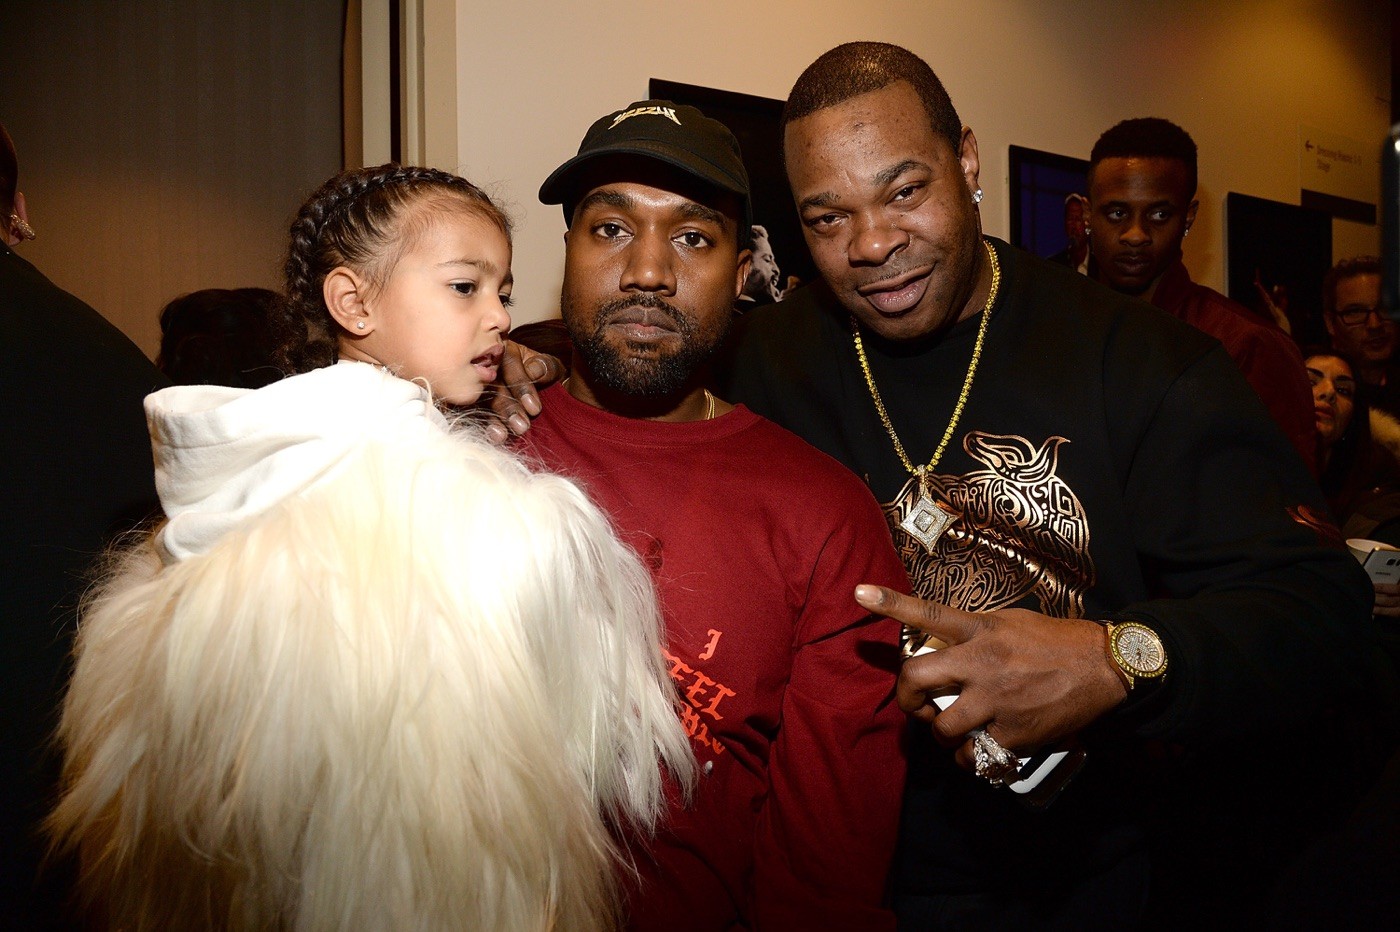 ¿Qué pide Kanye West en un concierto?